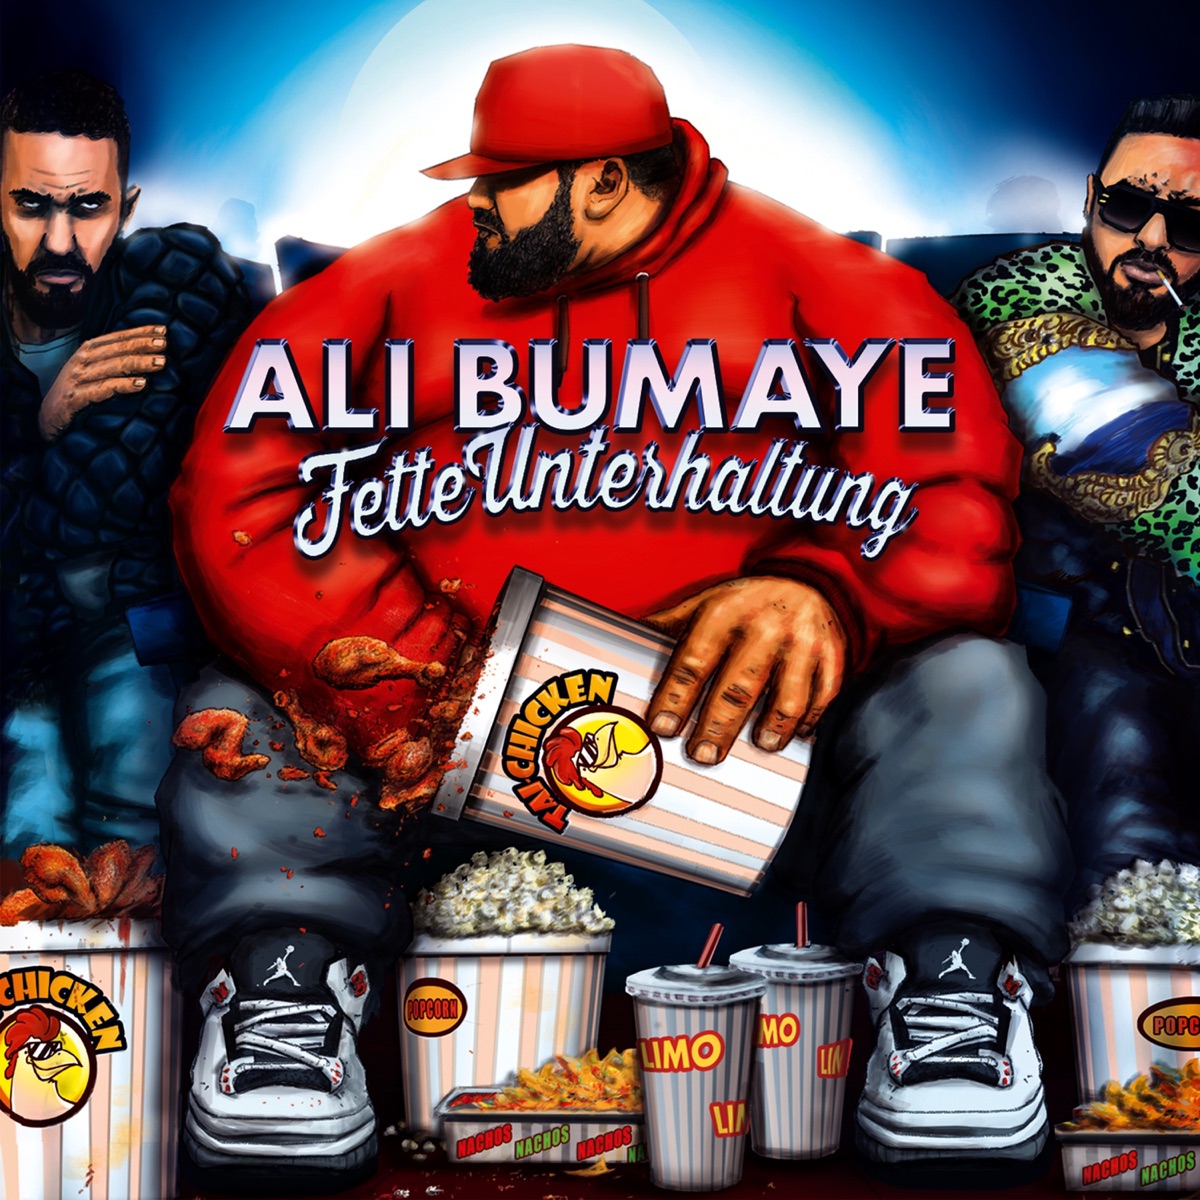 Fette Unterhaltung“ von Ali Bumaye bei Apple Music